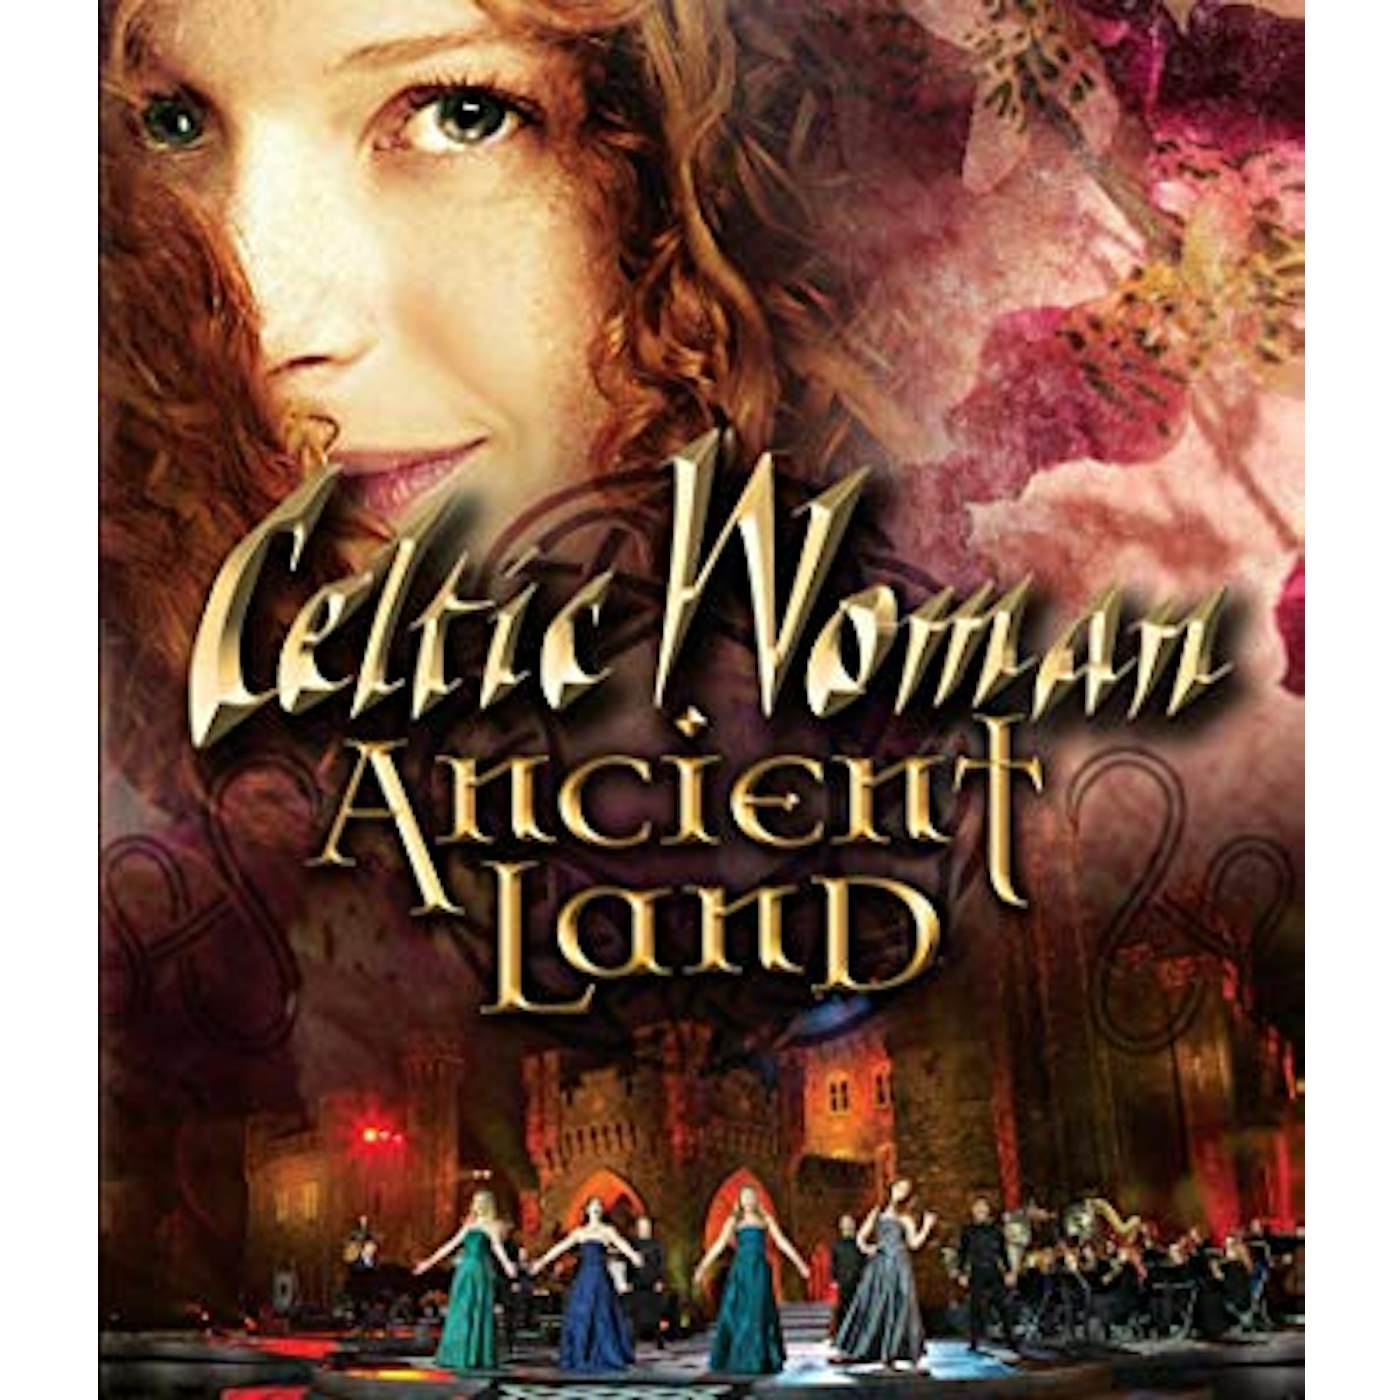 Celtic Woman ANCIENT LAND DVD